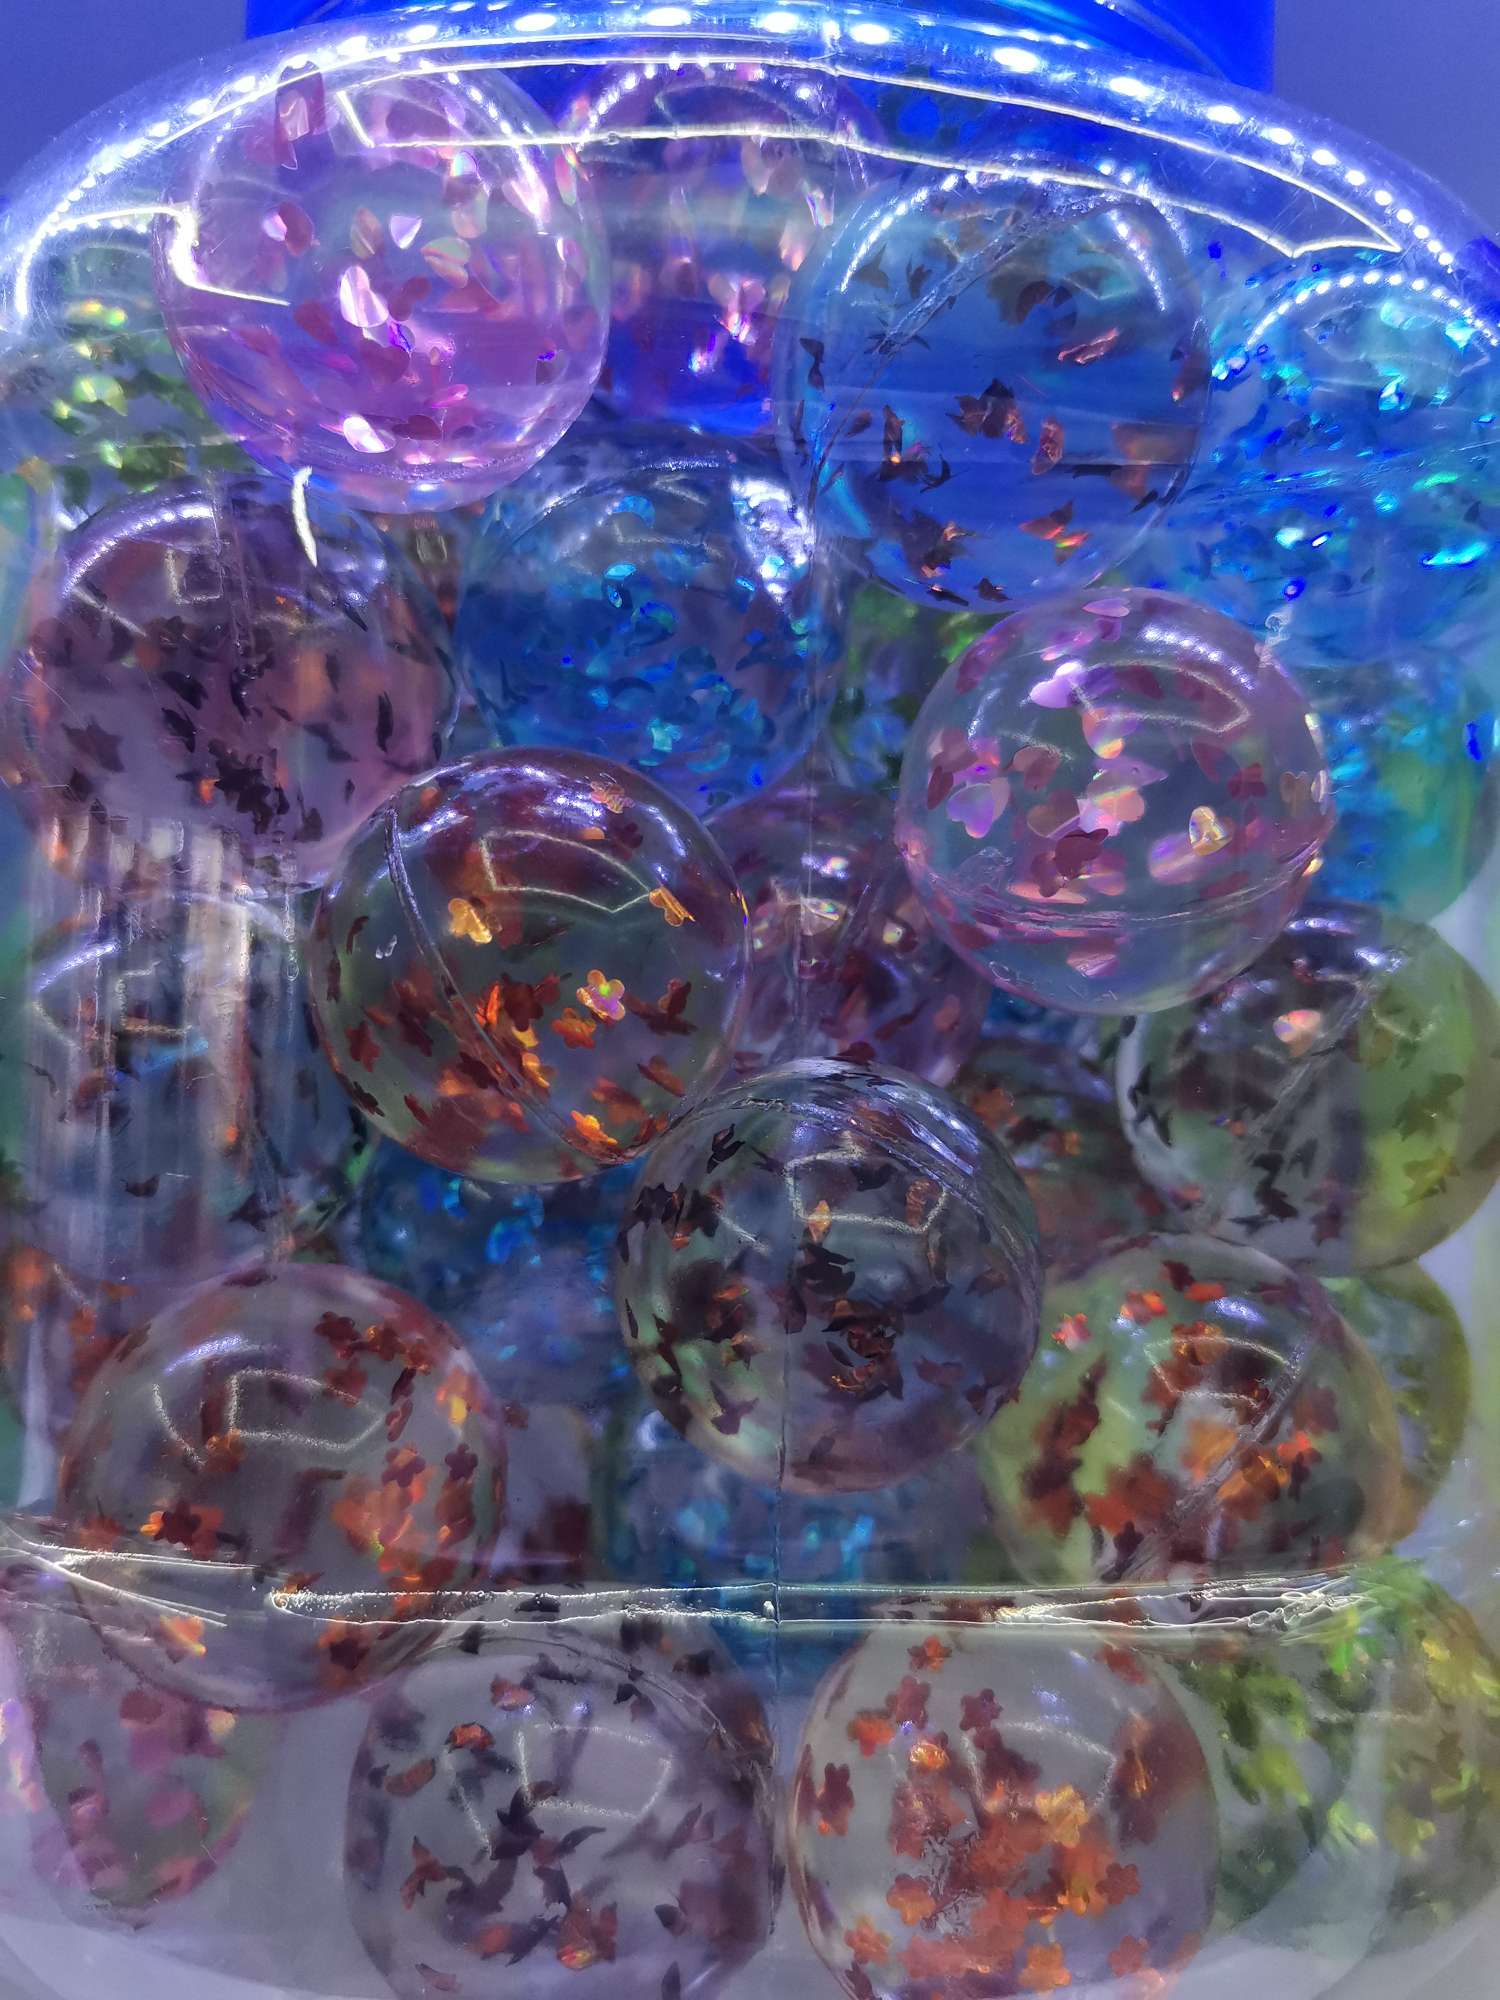 厂家直销弹力球 透明五星球 儿童玩具 五星跳跳球 环保橡胶-1001/2092产品图